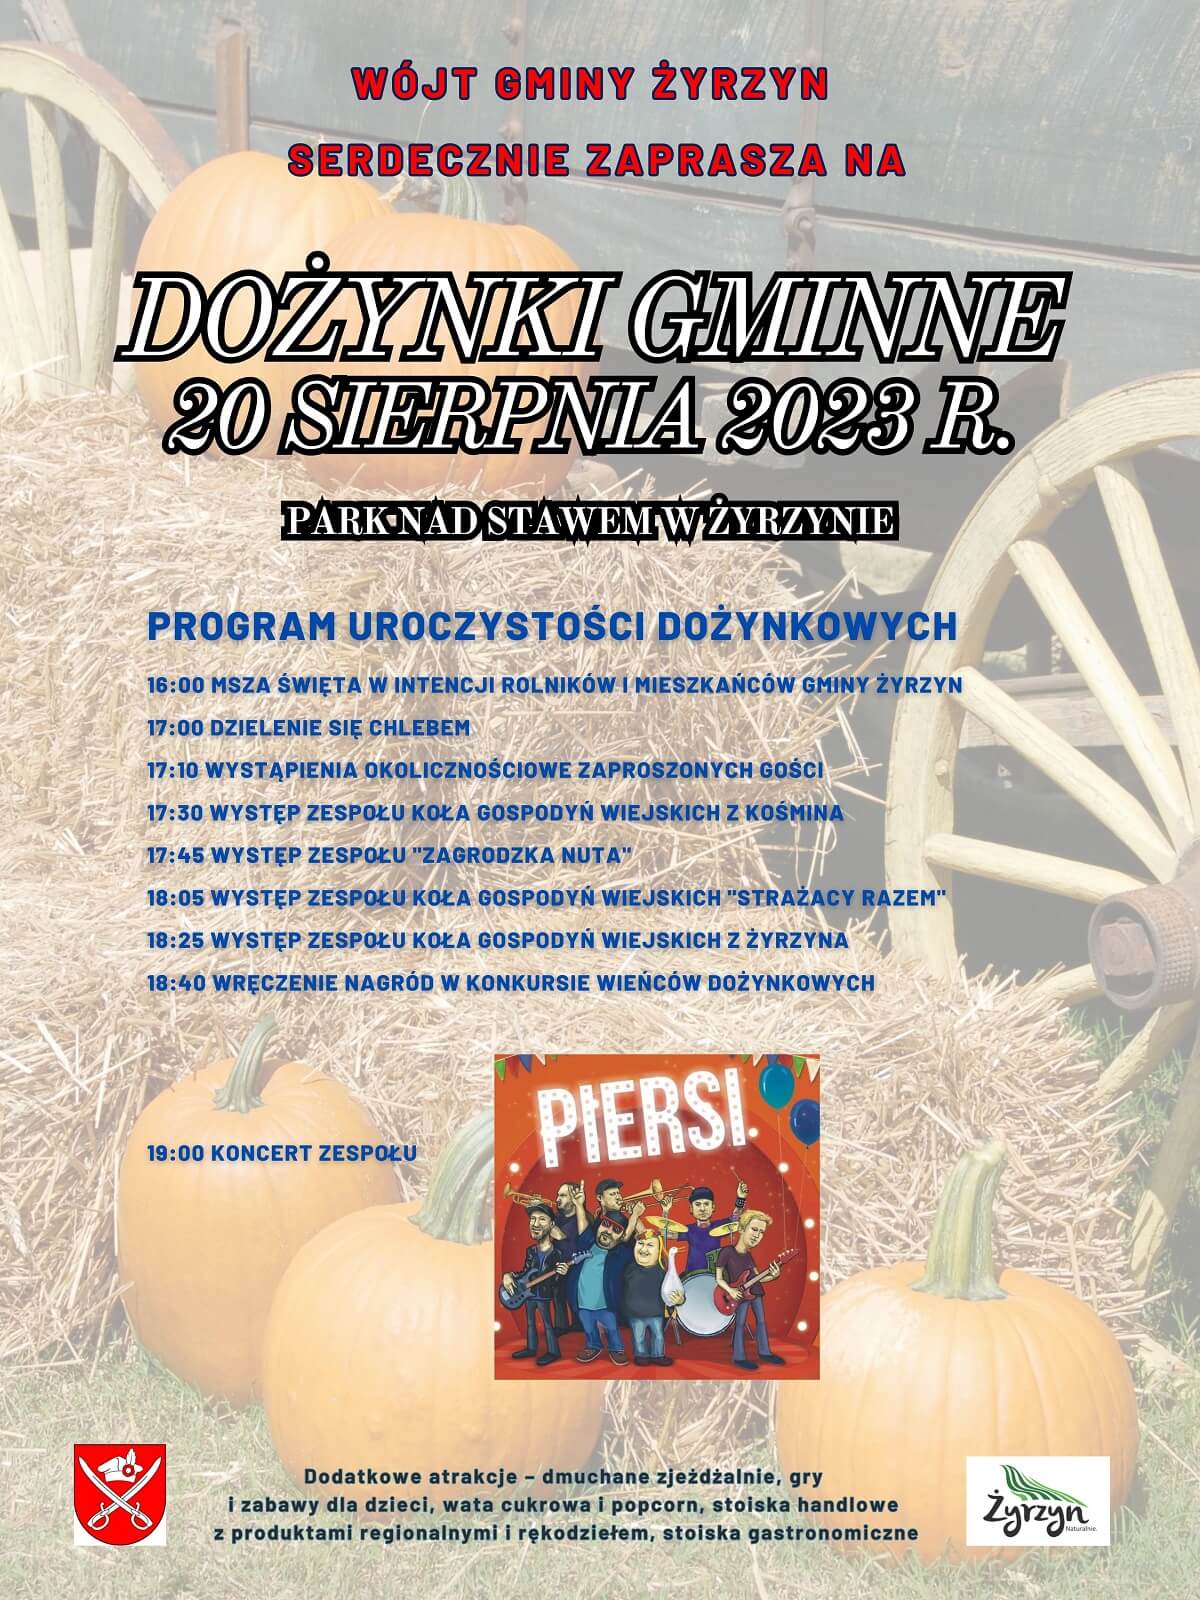 Dożynki w Żyrzynie 2023 - plakat, program wydarzenia